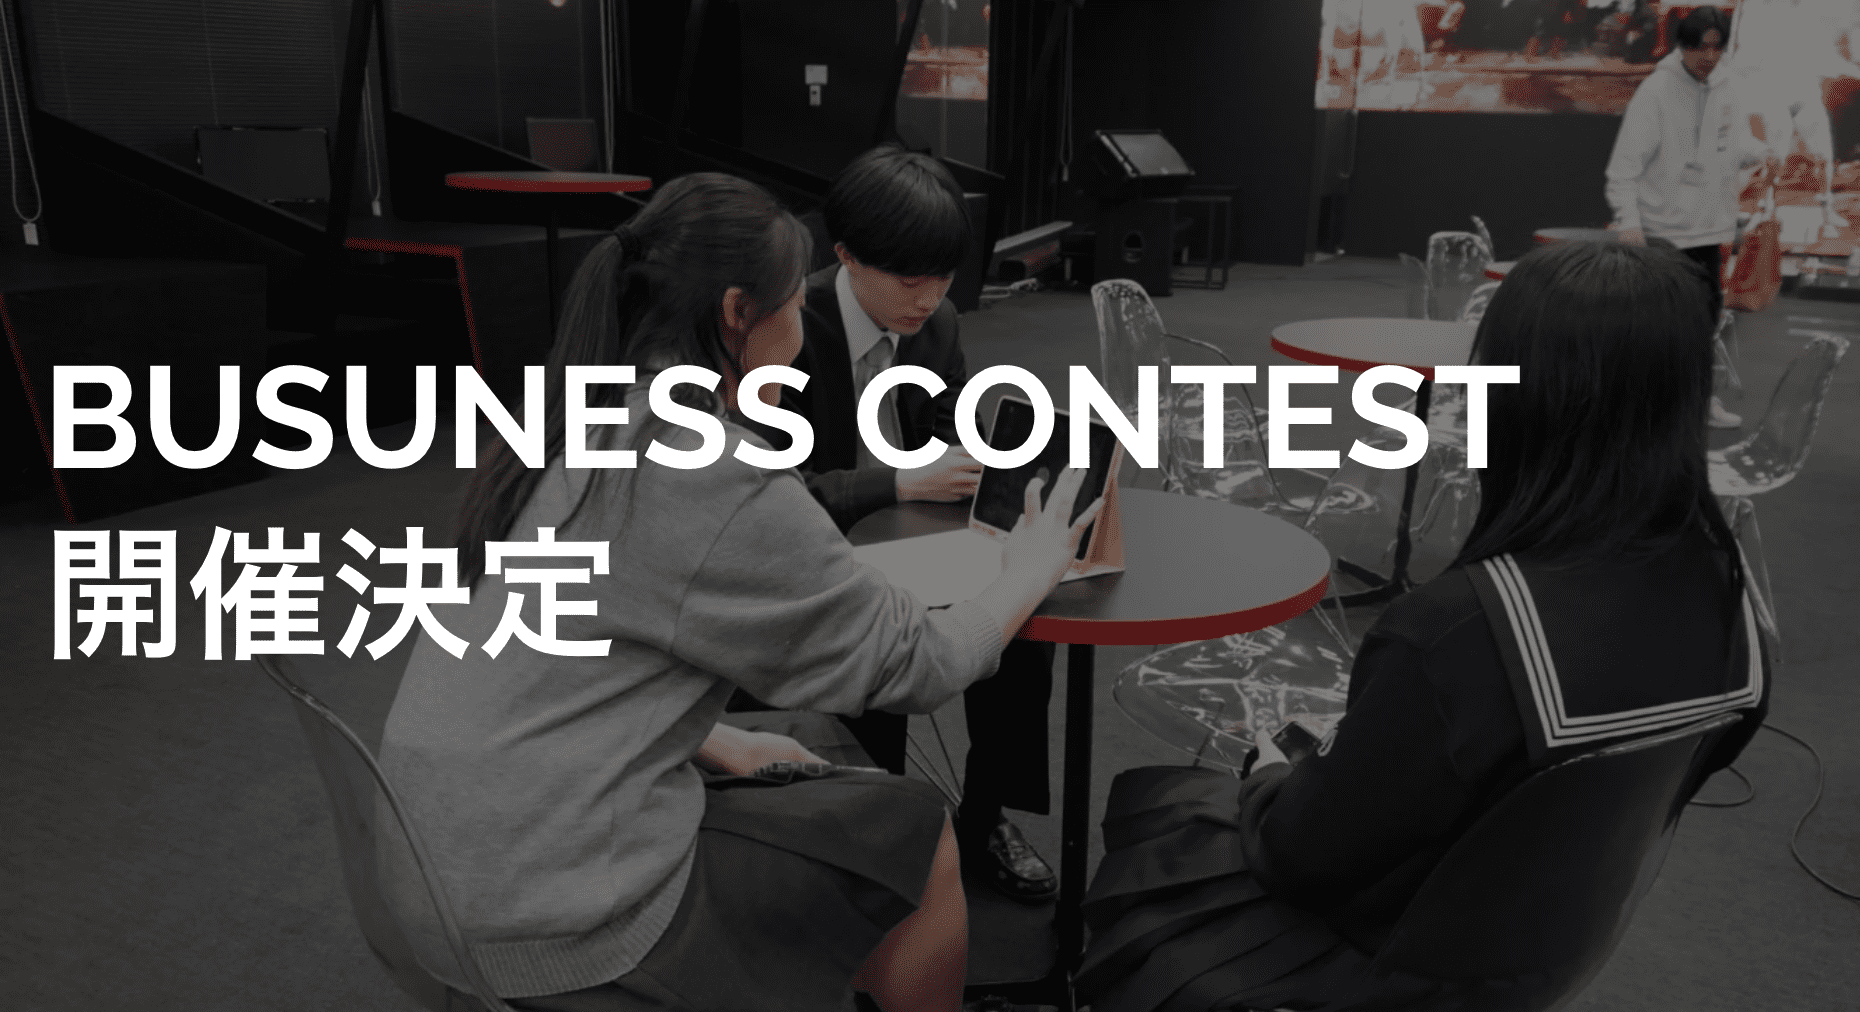 【高校生による高校生のためのビジネスコンテスト】 Business Contest REX